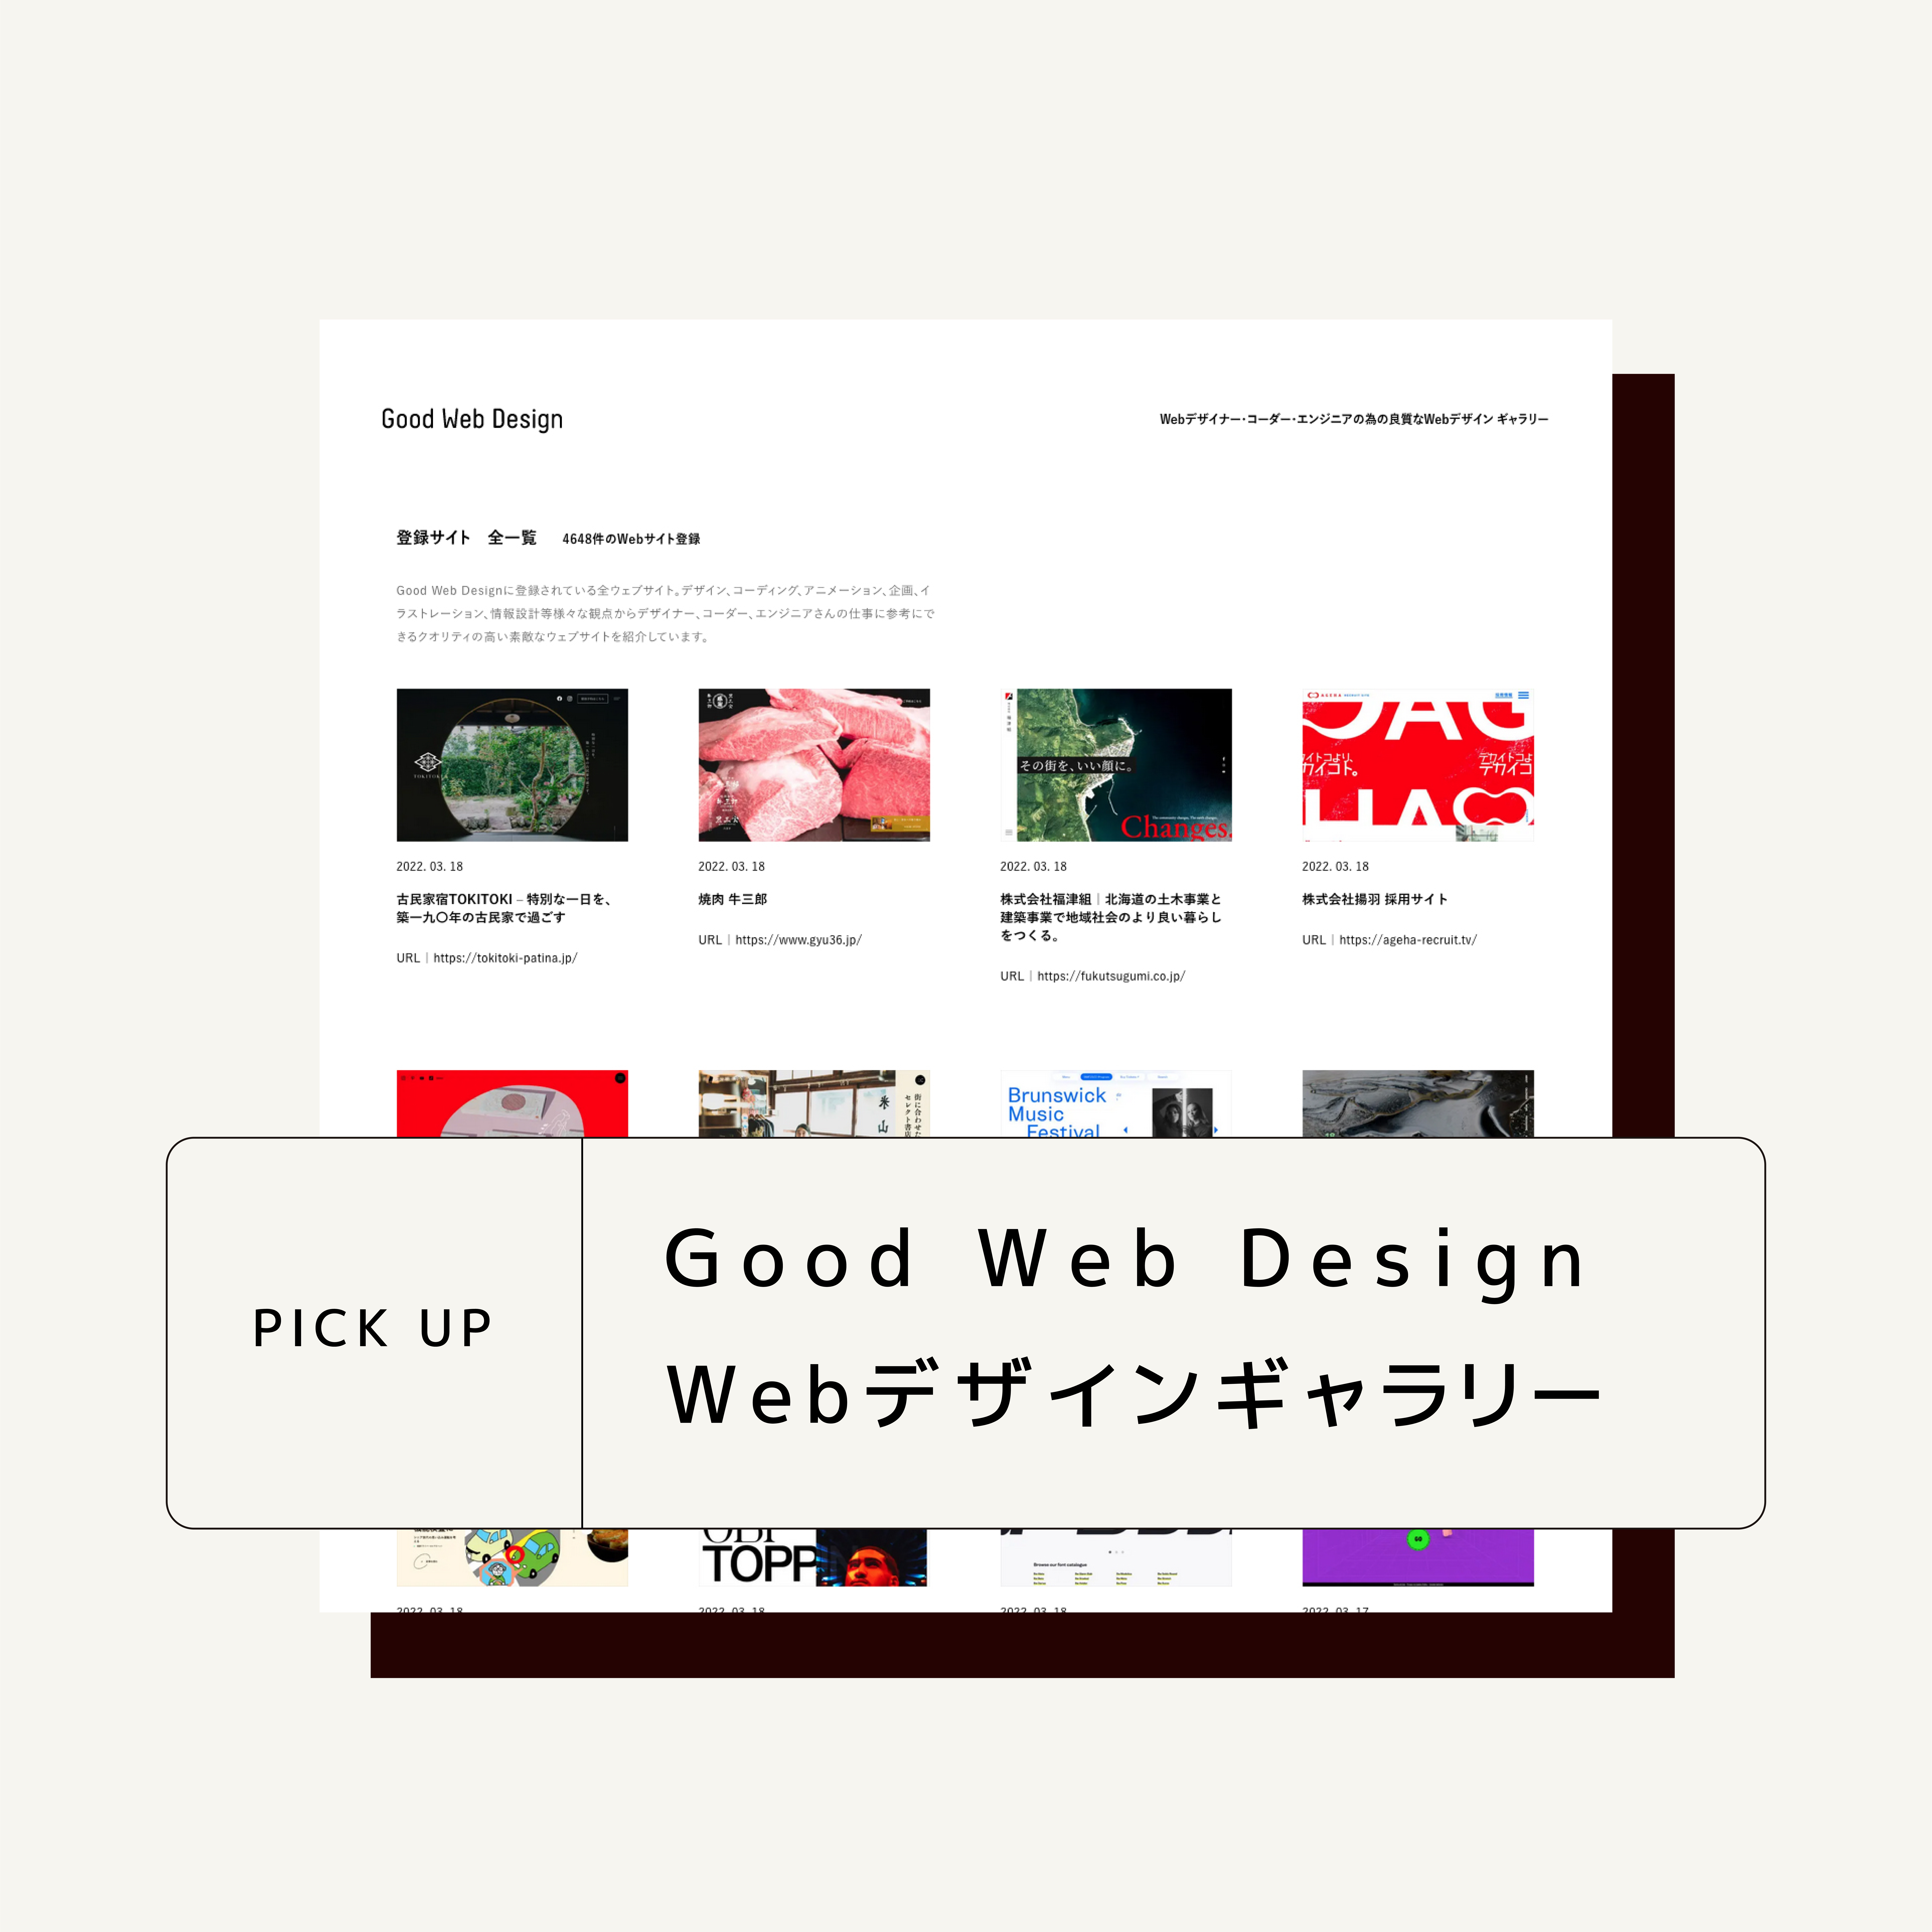 Webデザインギャラリー Good Web Designさんにご紹介いただきました